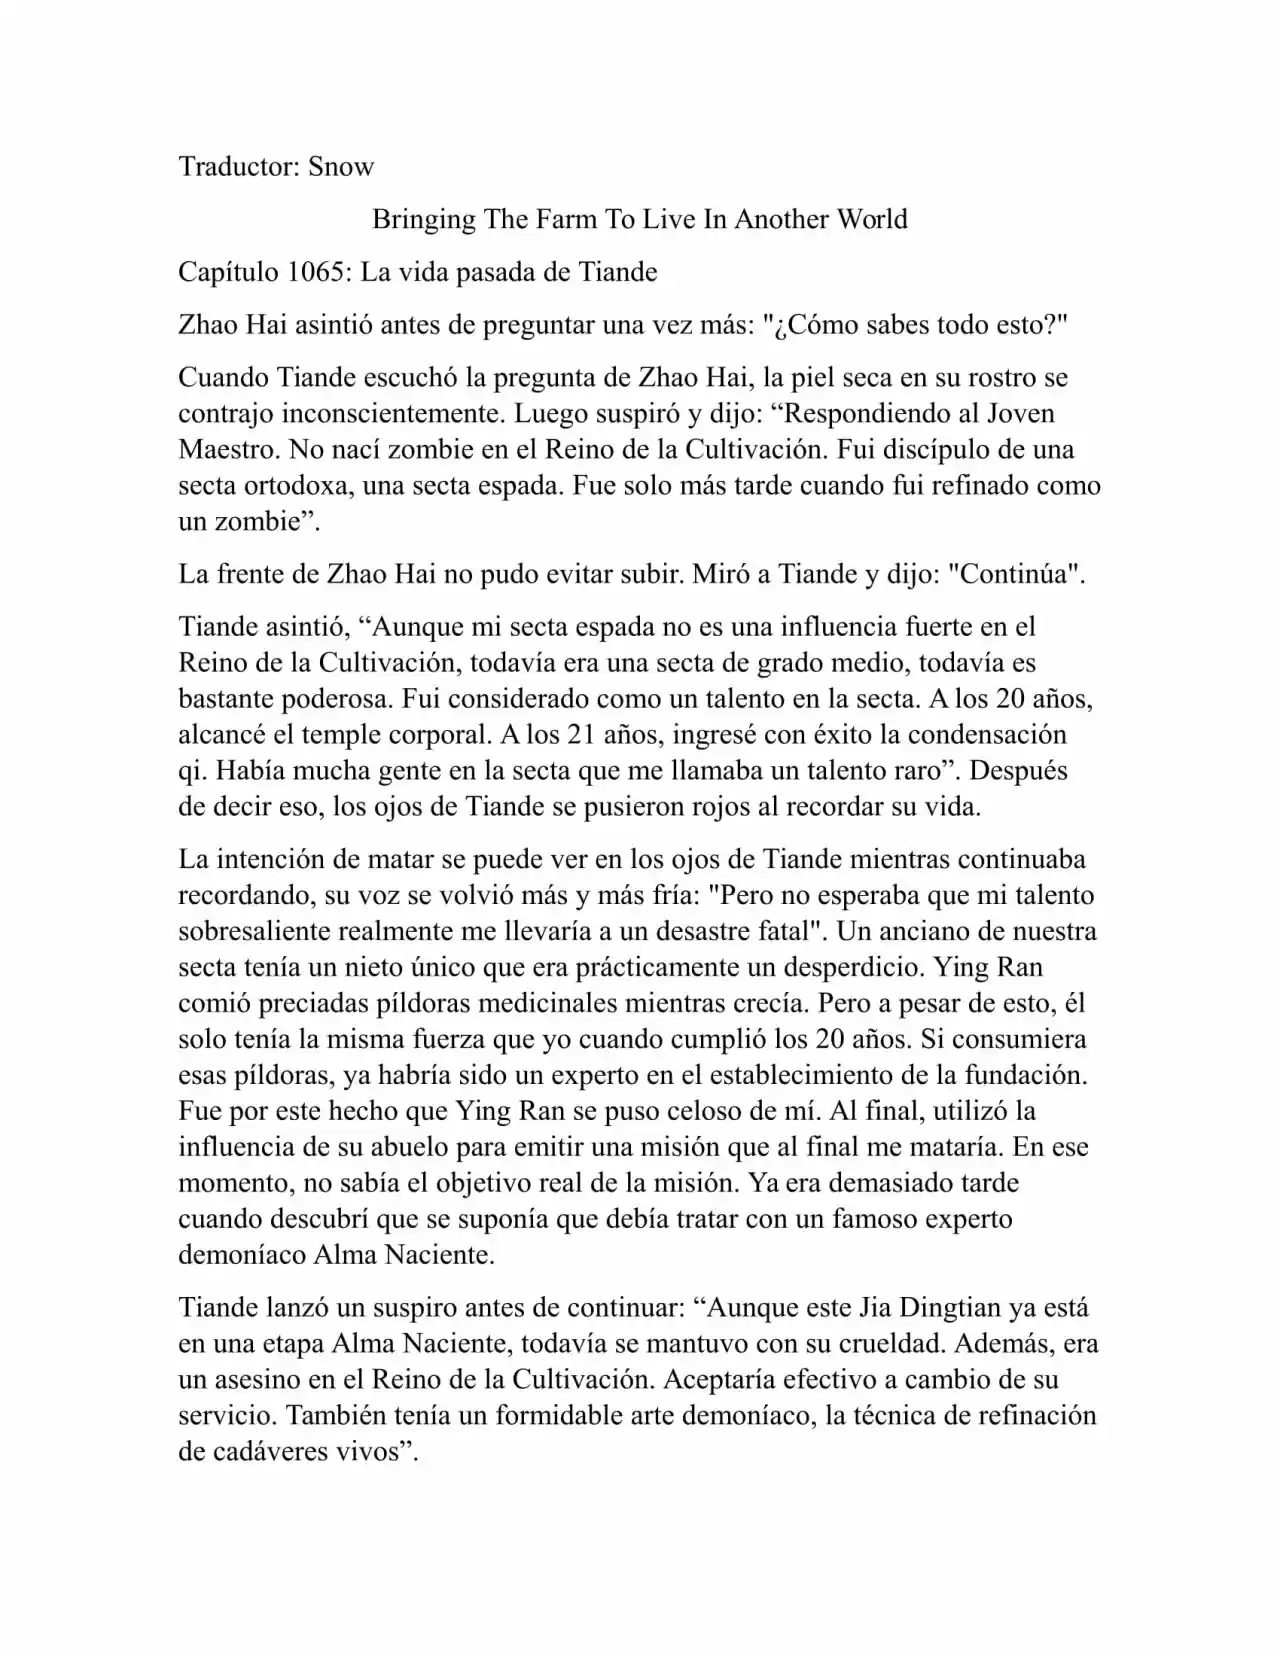 Llevando La Granja Para Vivir En Otro Mundo (Novela: Chapter 1065 - Page 1